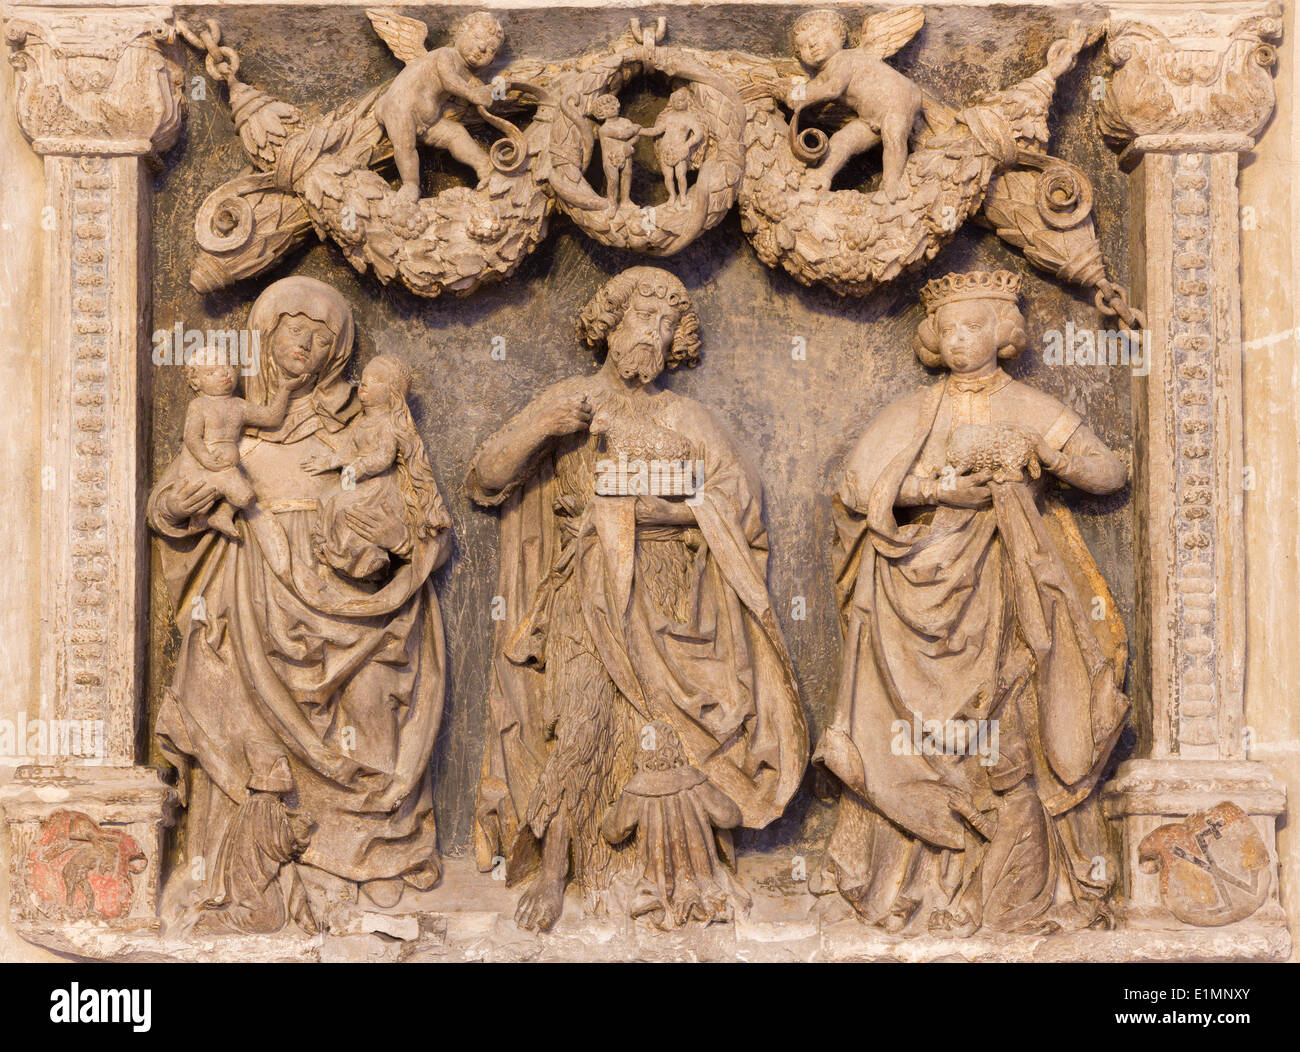 Viena - relieve de piedra de la parte posterior de la Iglesia de la Orden Teutónica o Deutschordenkirche - santos Foto de stock